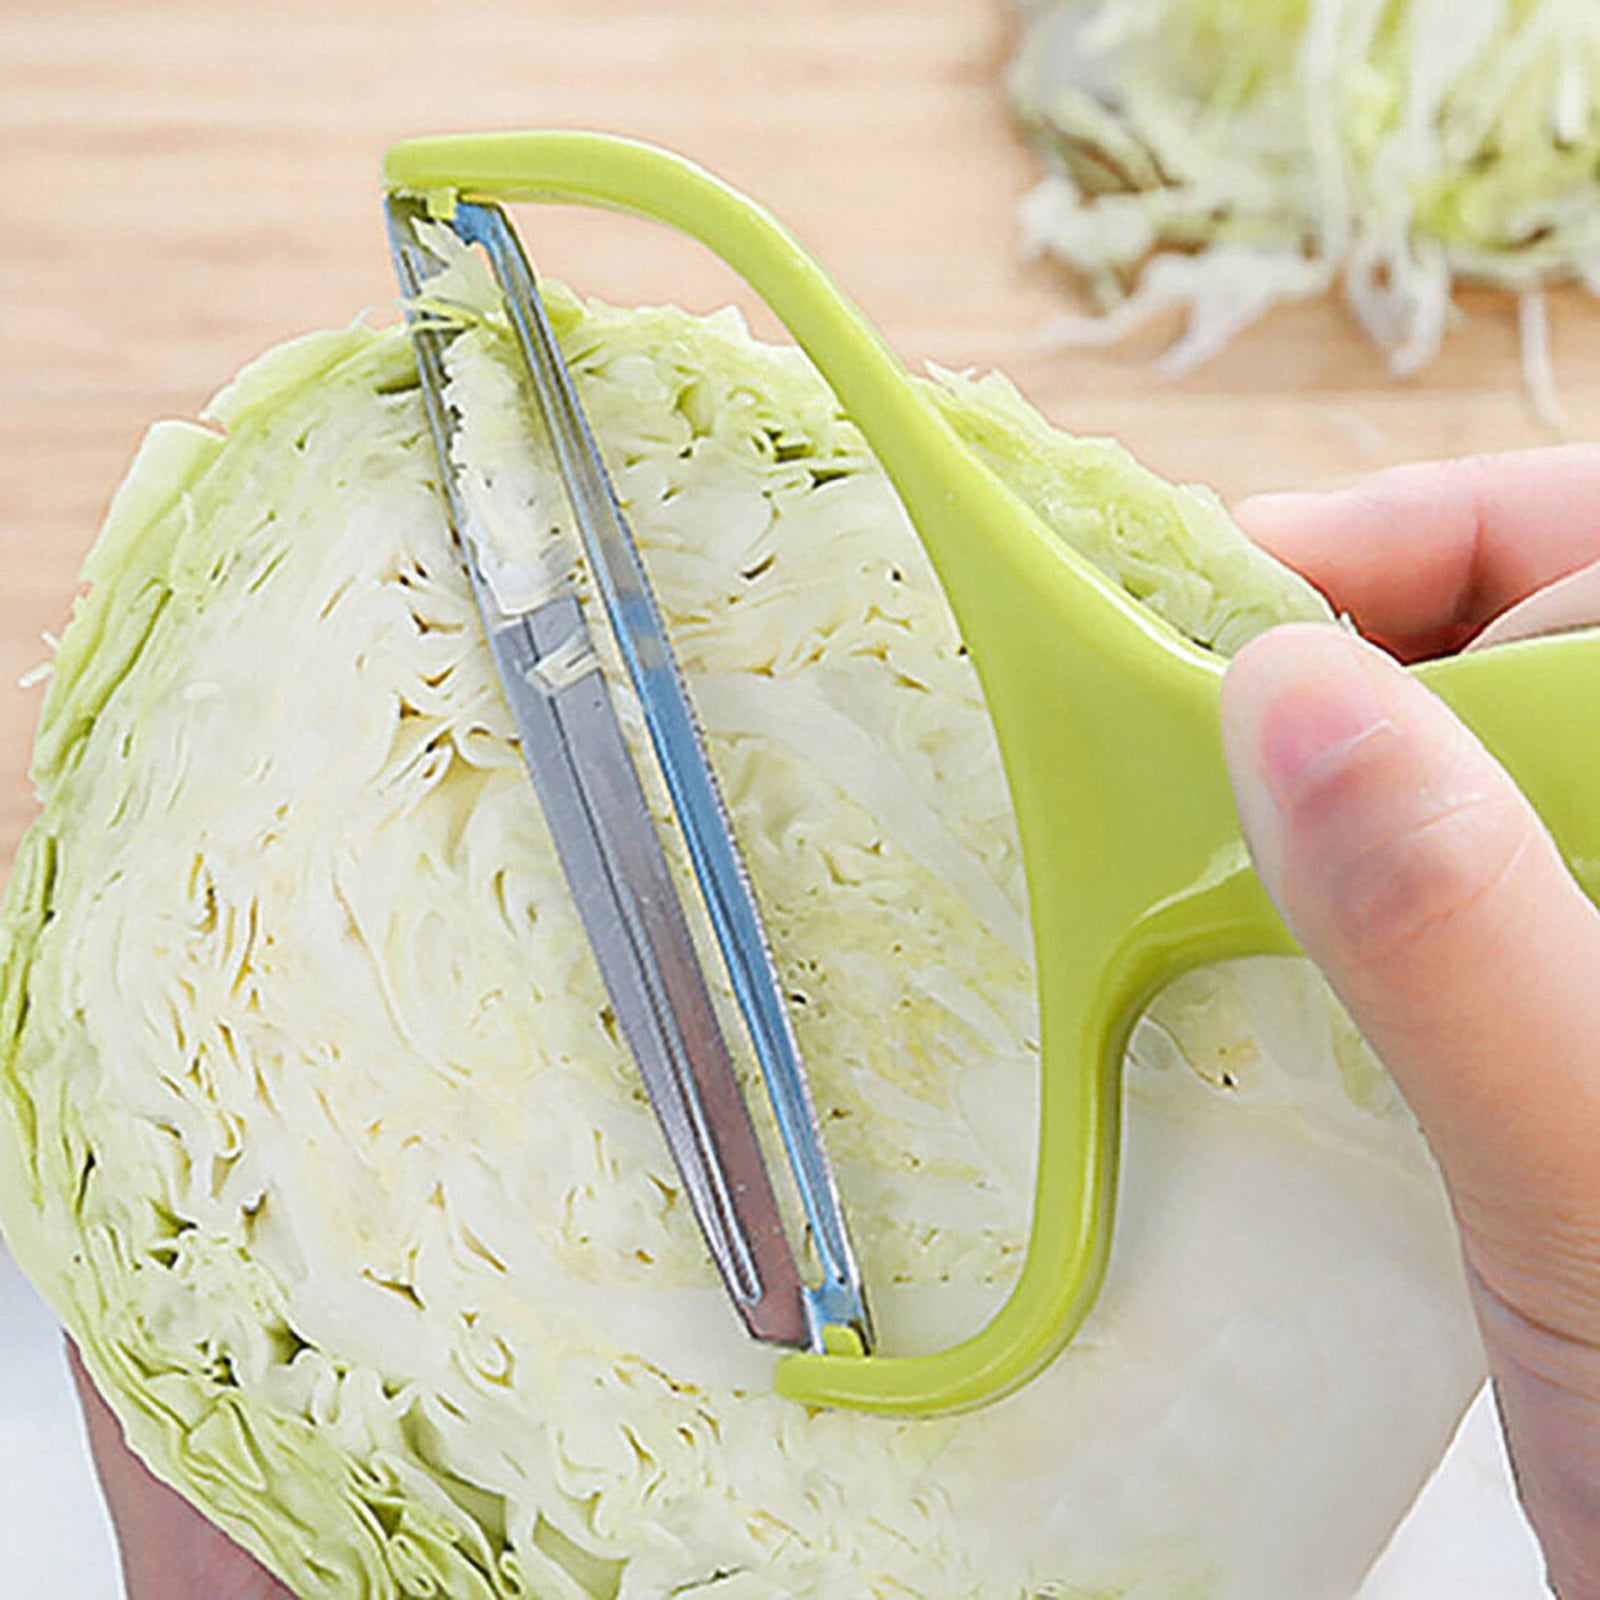  Vegetable Peeler Cabbage Shredder Stainless Steel - Reluen  Fruit Peeler Tool Potato Peelers for Kitchen Veggie Peeler - Lettuce Cabbage  Slicer Shredder - Cabbage Slicer Knife - Kitchen Accessories : Tools & Home  Improvement